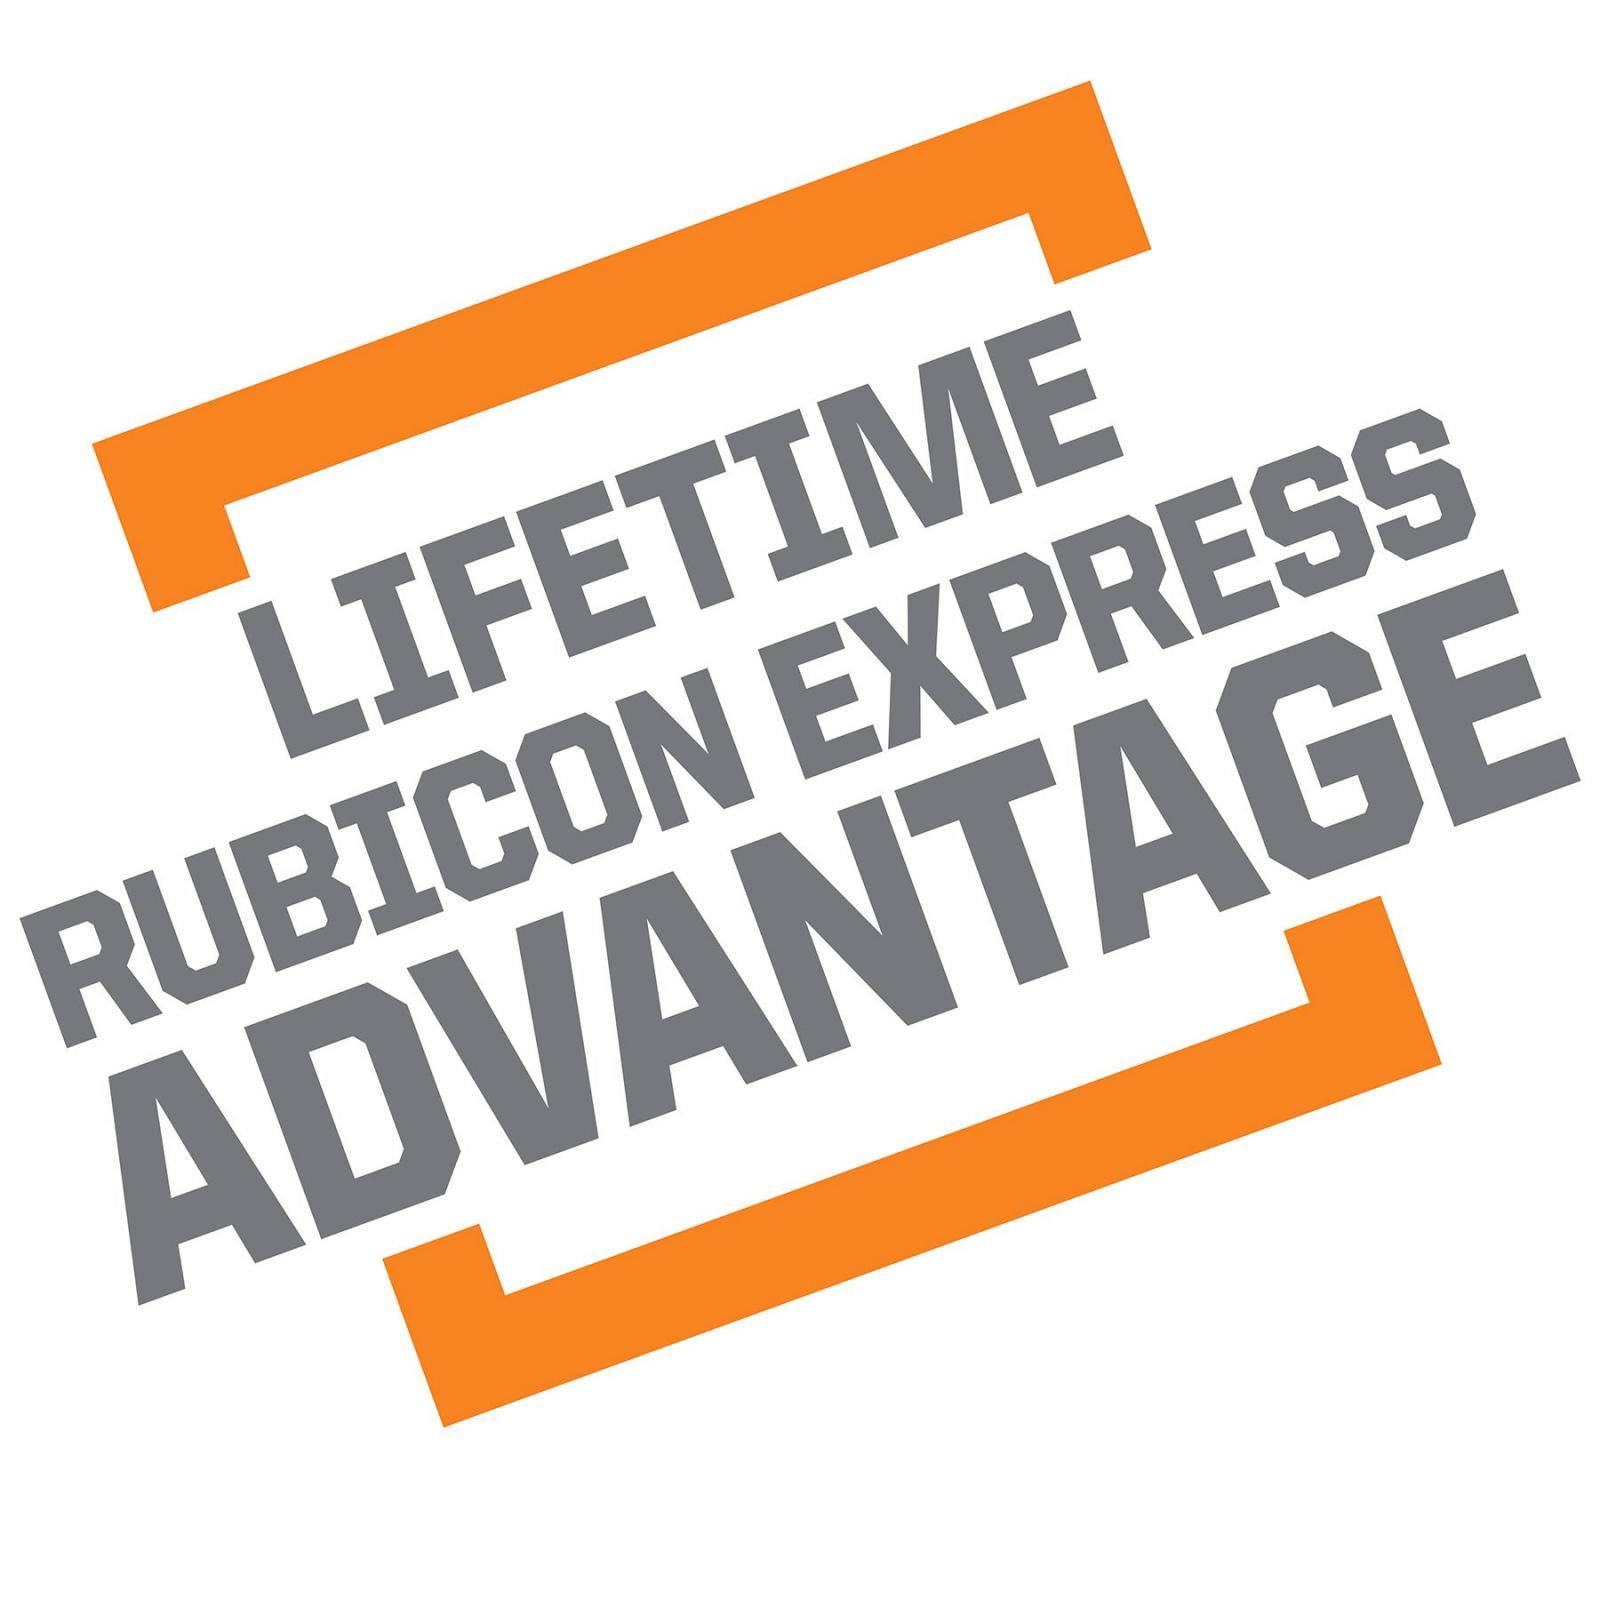 Rubicon Express Jk Transfer Case Flange Adapter Rear 07-18 Jeep Wrangler JK/JKU 